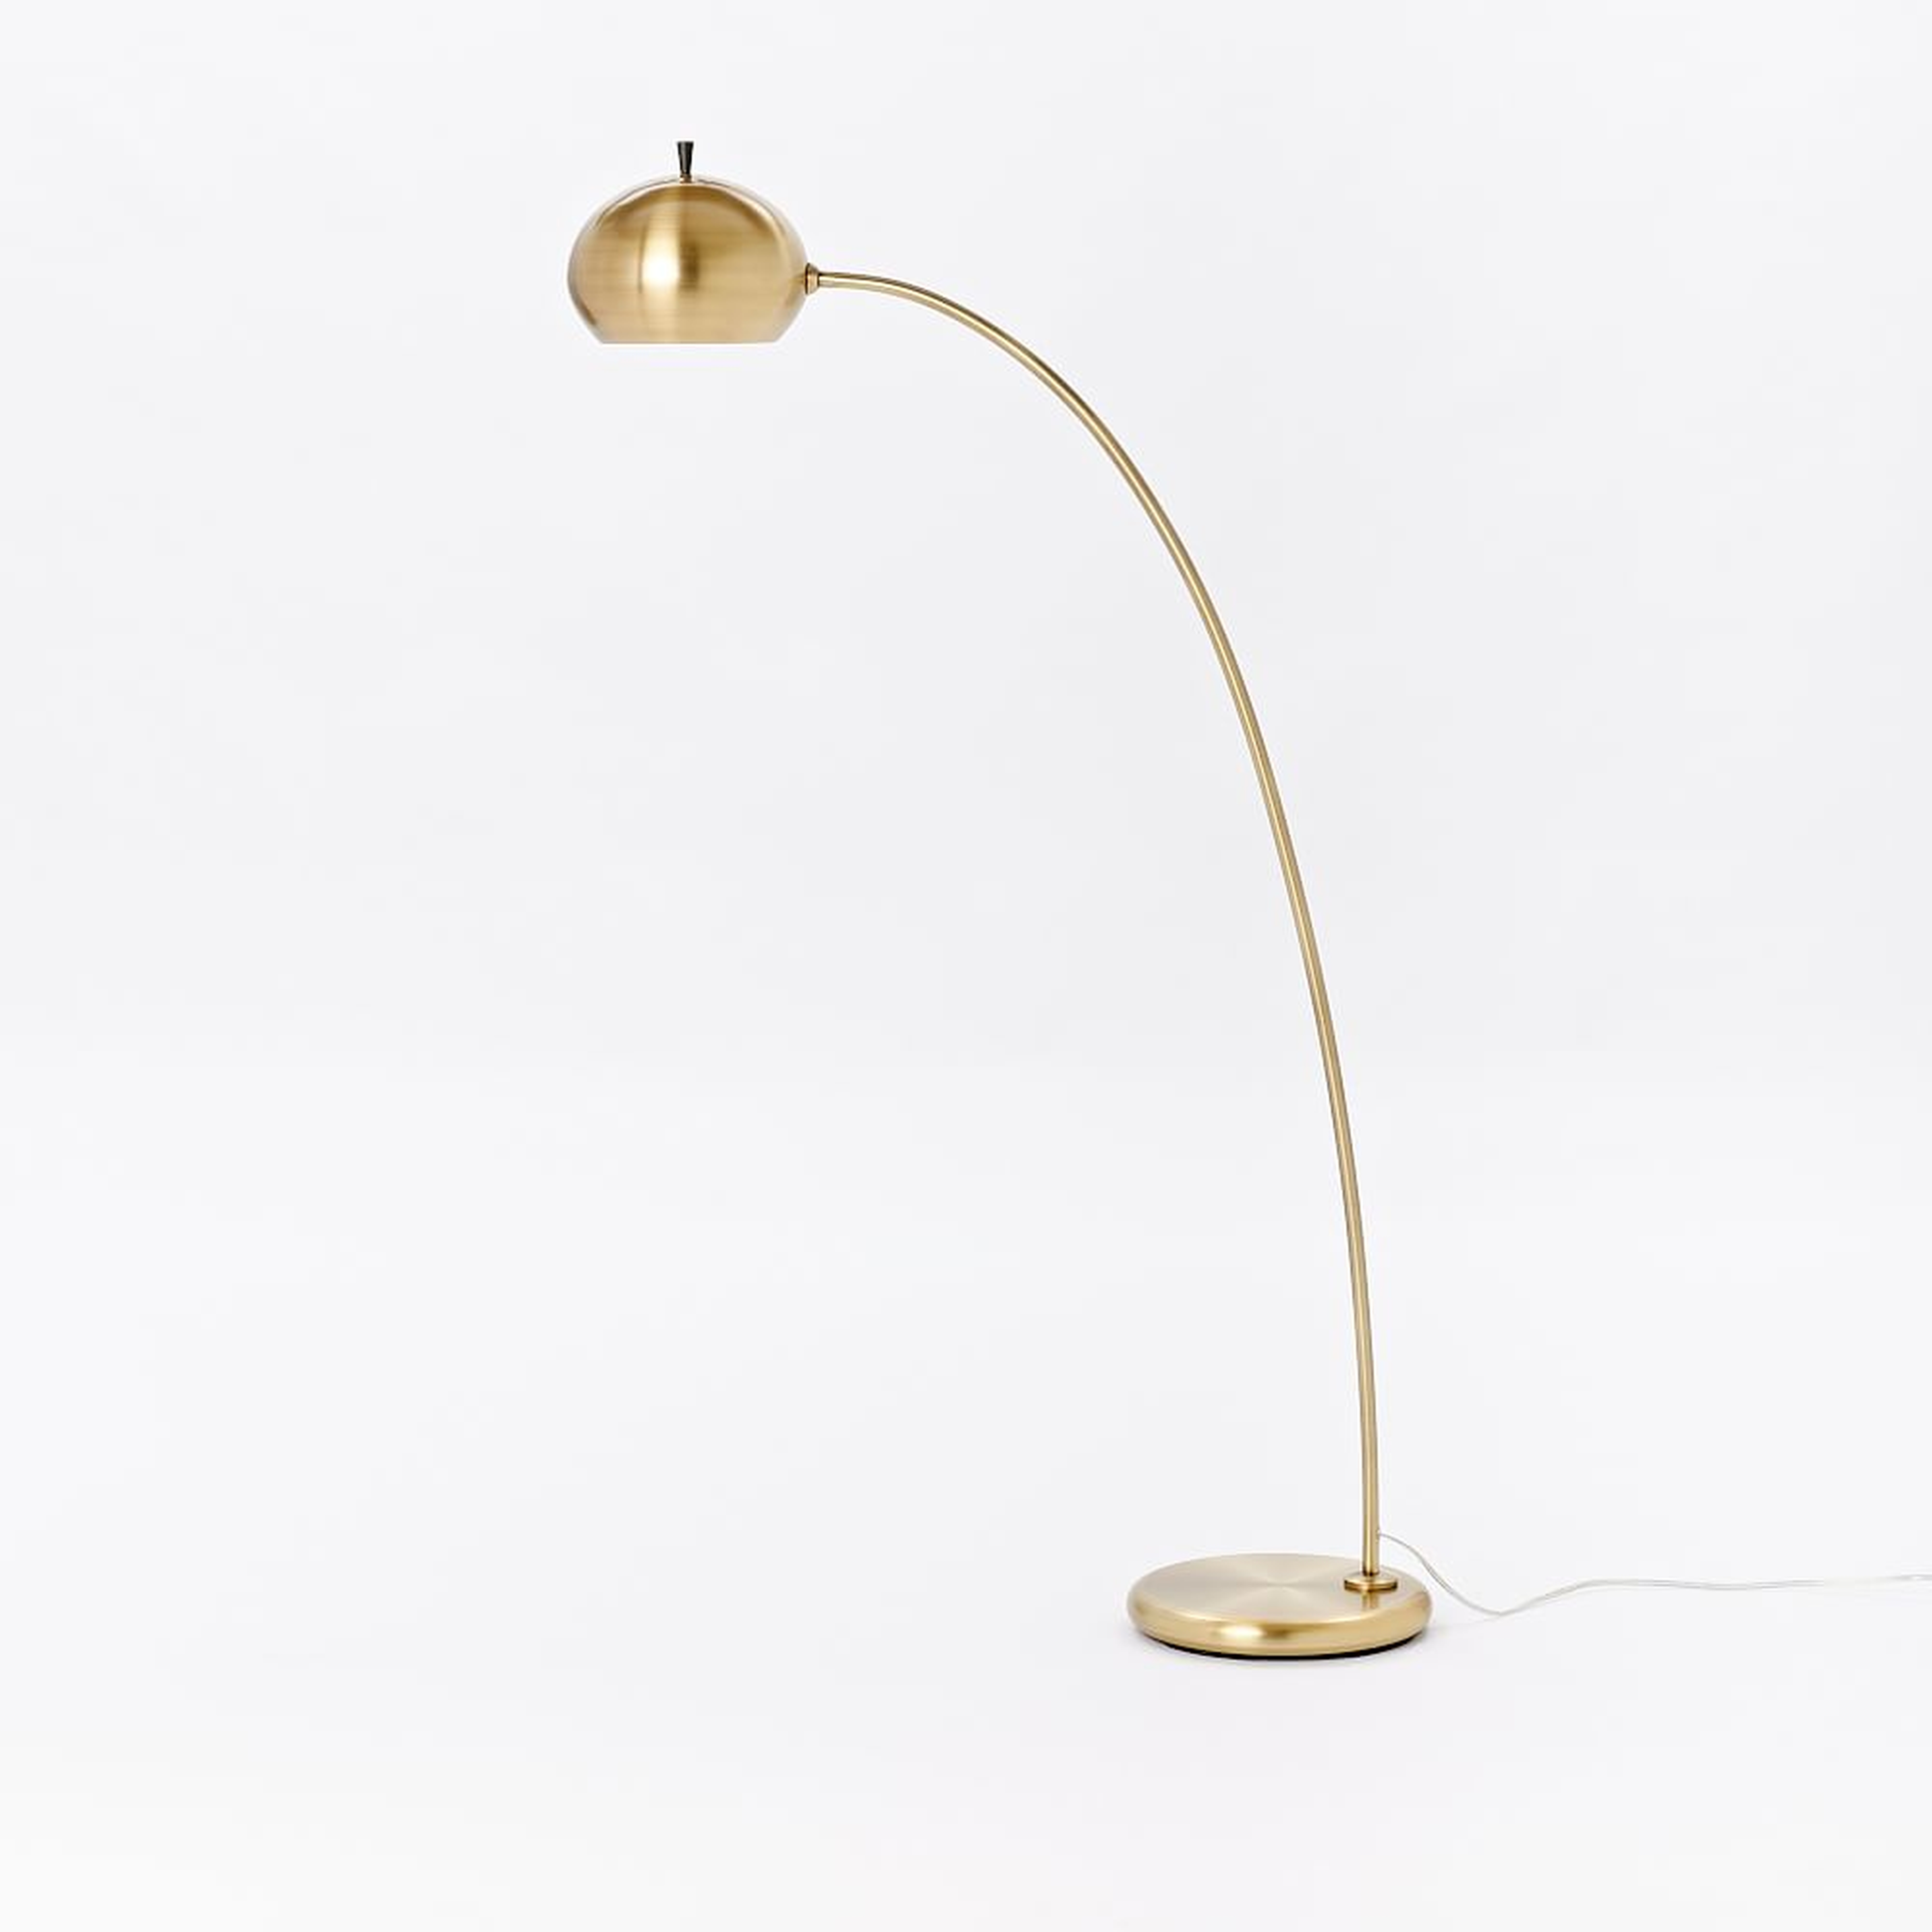 Petite Arc 5 Overarching Floor Lamp Antique Brass (54") - West Elm